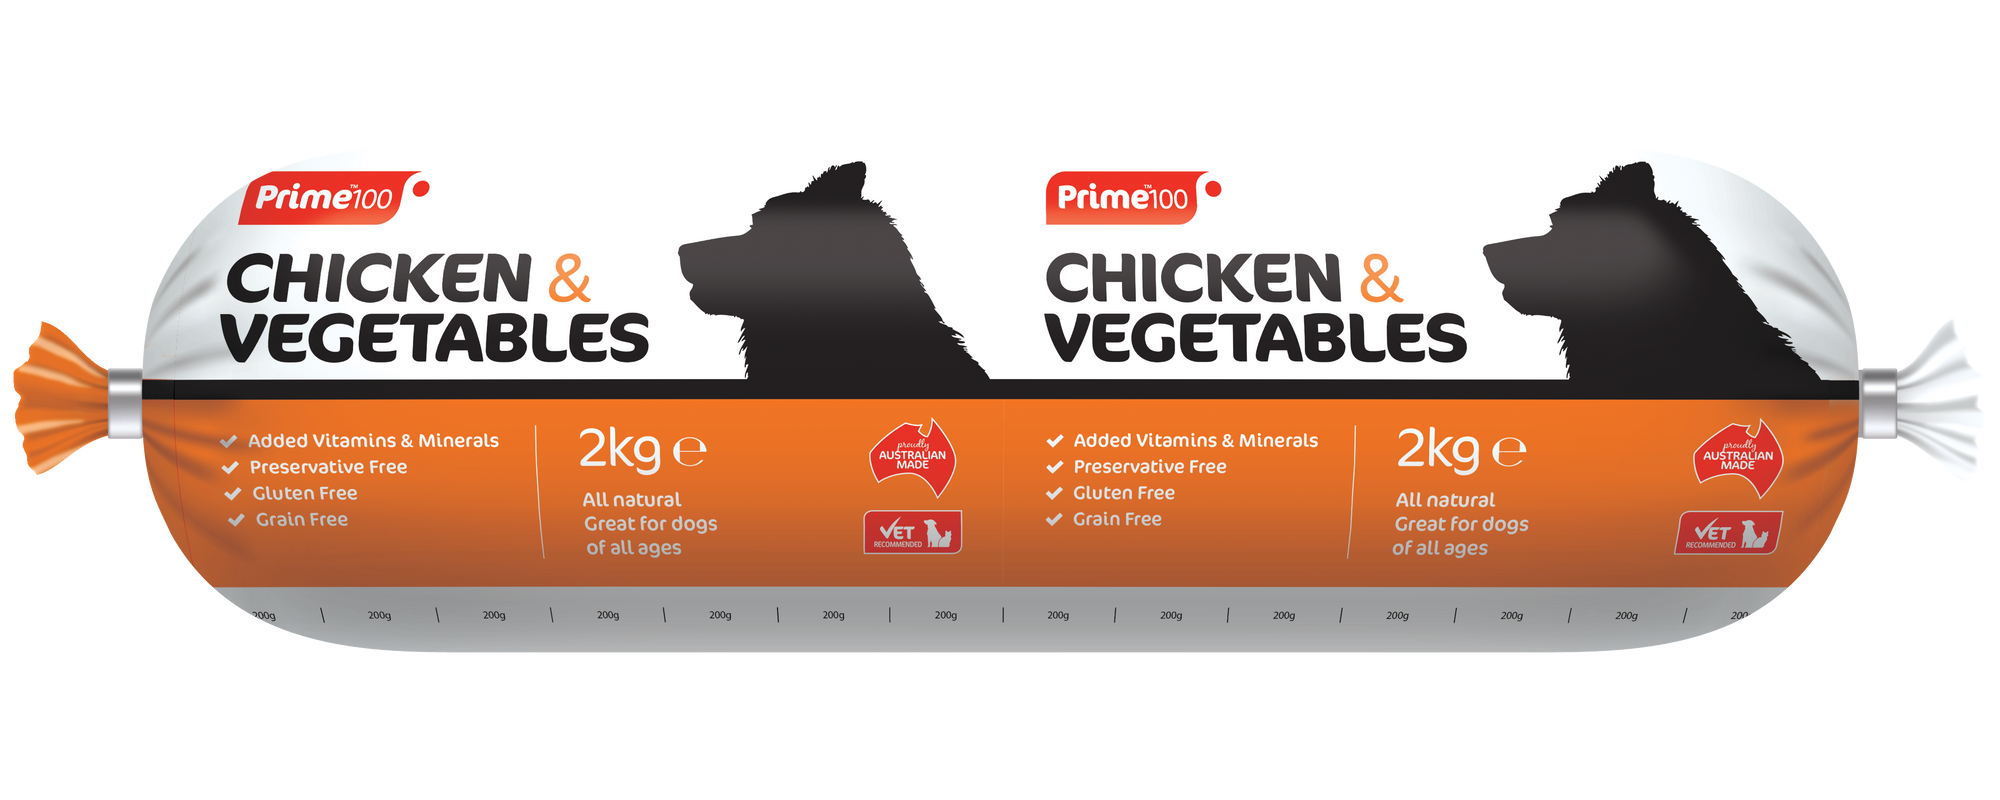 Prime 100 Chicken & Vegetable Roll 2Kg - 9340710000237.png